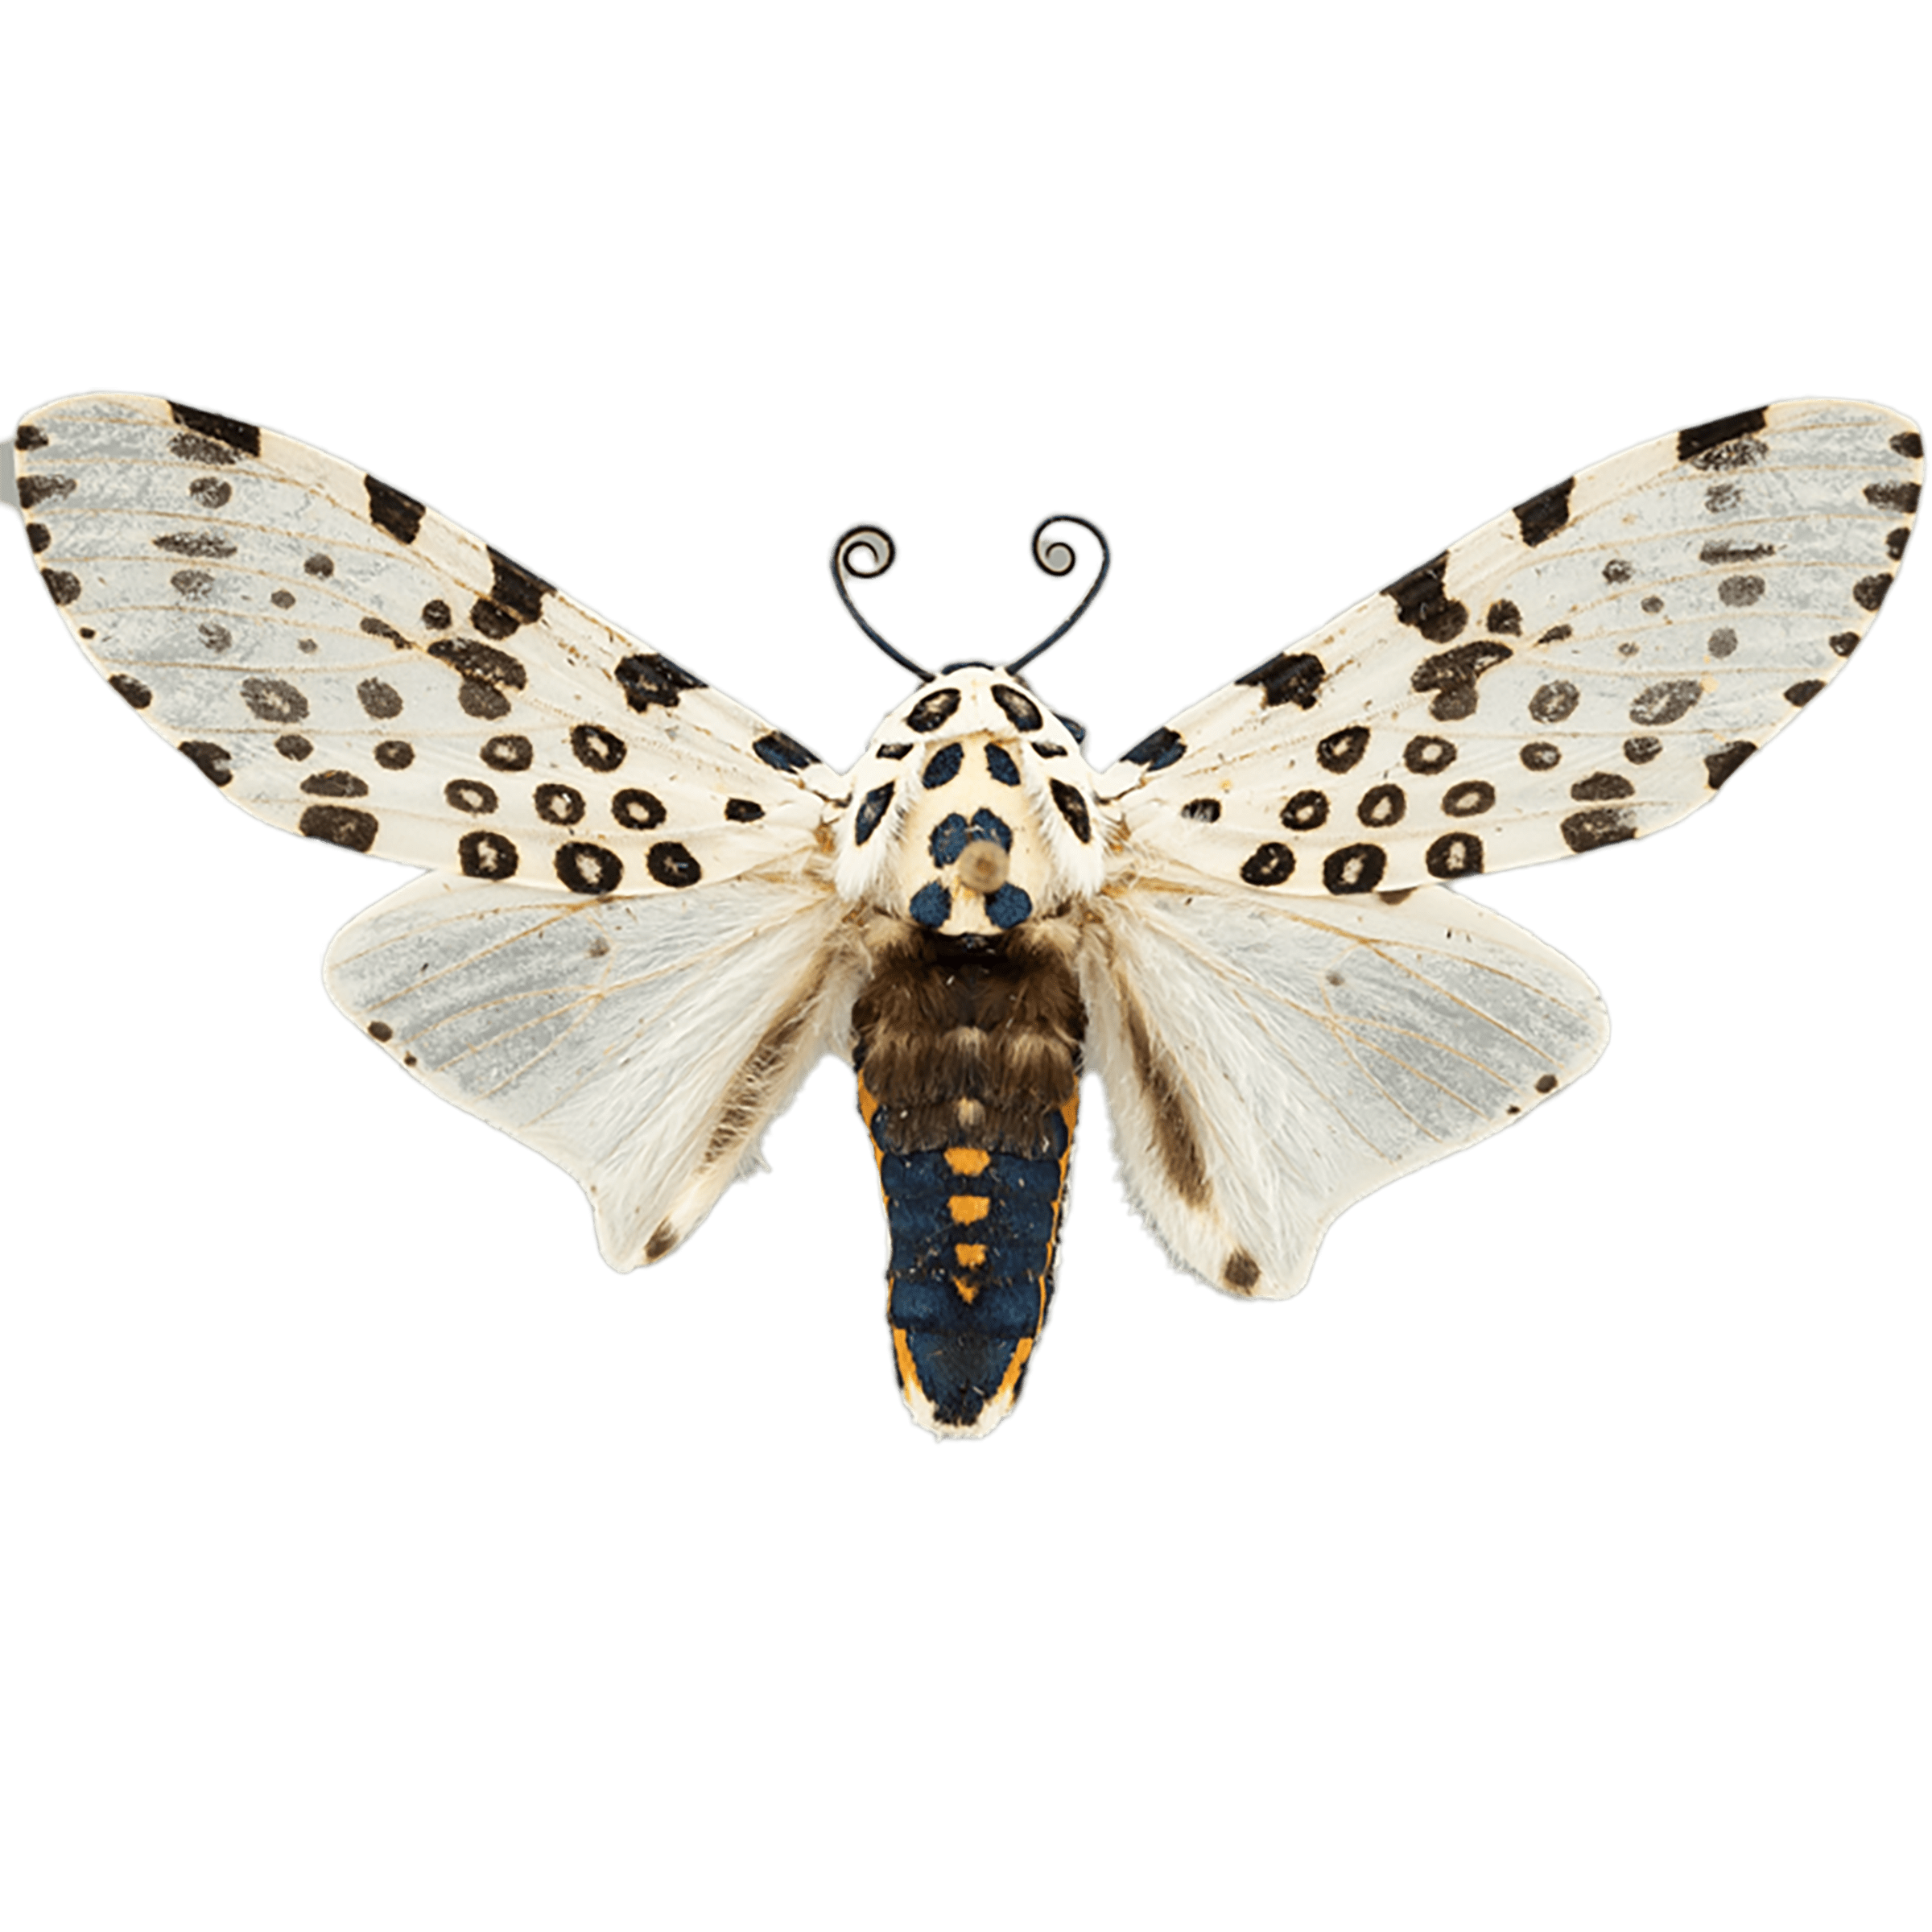 Giant Leopard Moth - The Wisconsin Moths Field Guide